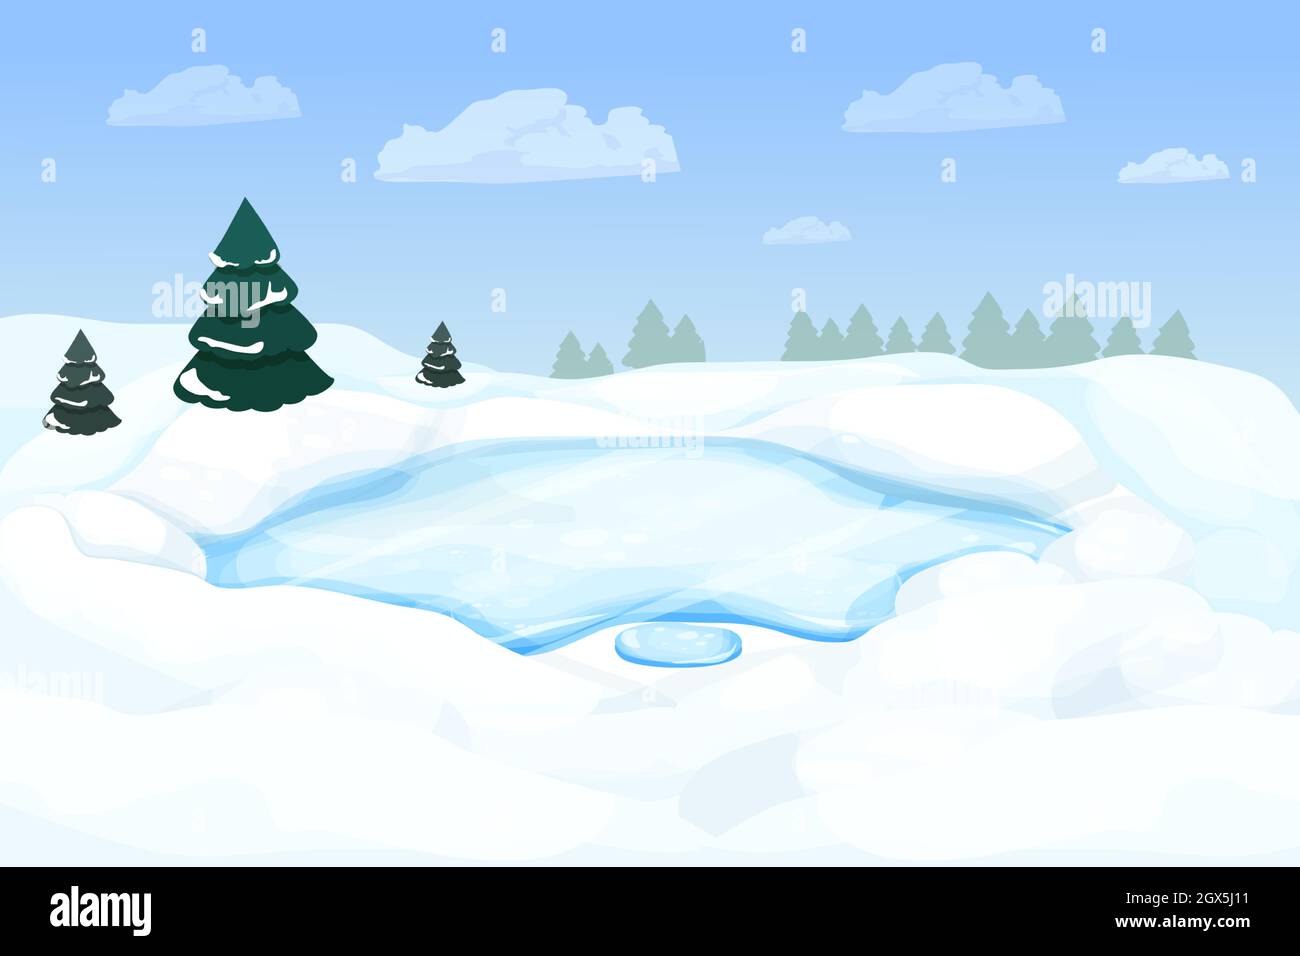 Winterlandschaft mit gefrorenem See, Fluss im Wald mit Schnee und Pinien im Cartoon-Stil. Verschneite Szene. Winterzeit, wilde und wilde Natur. Stock Vektor